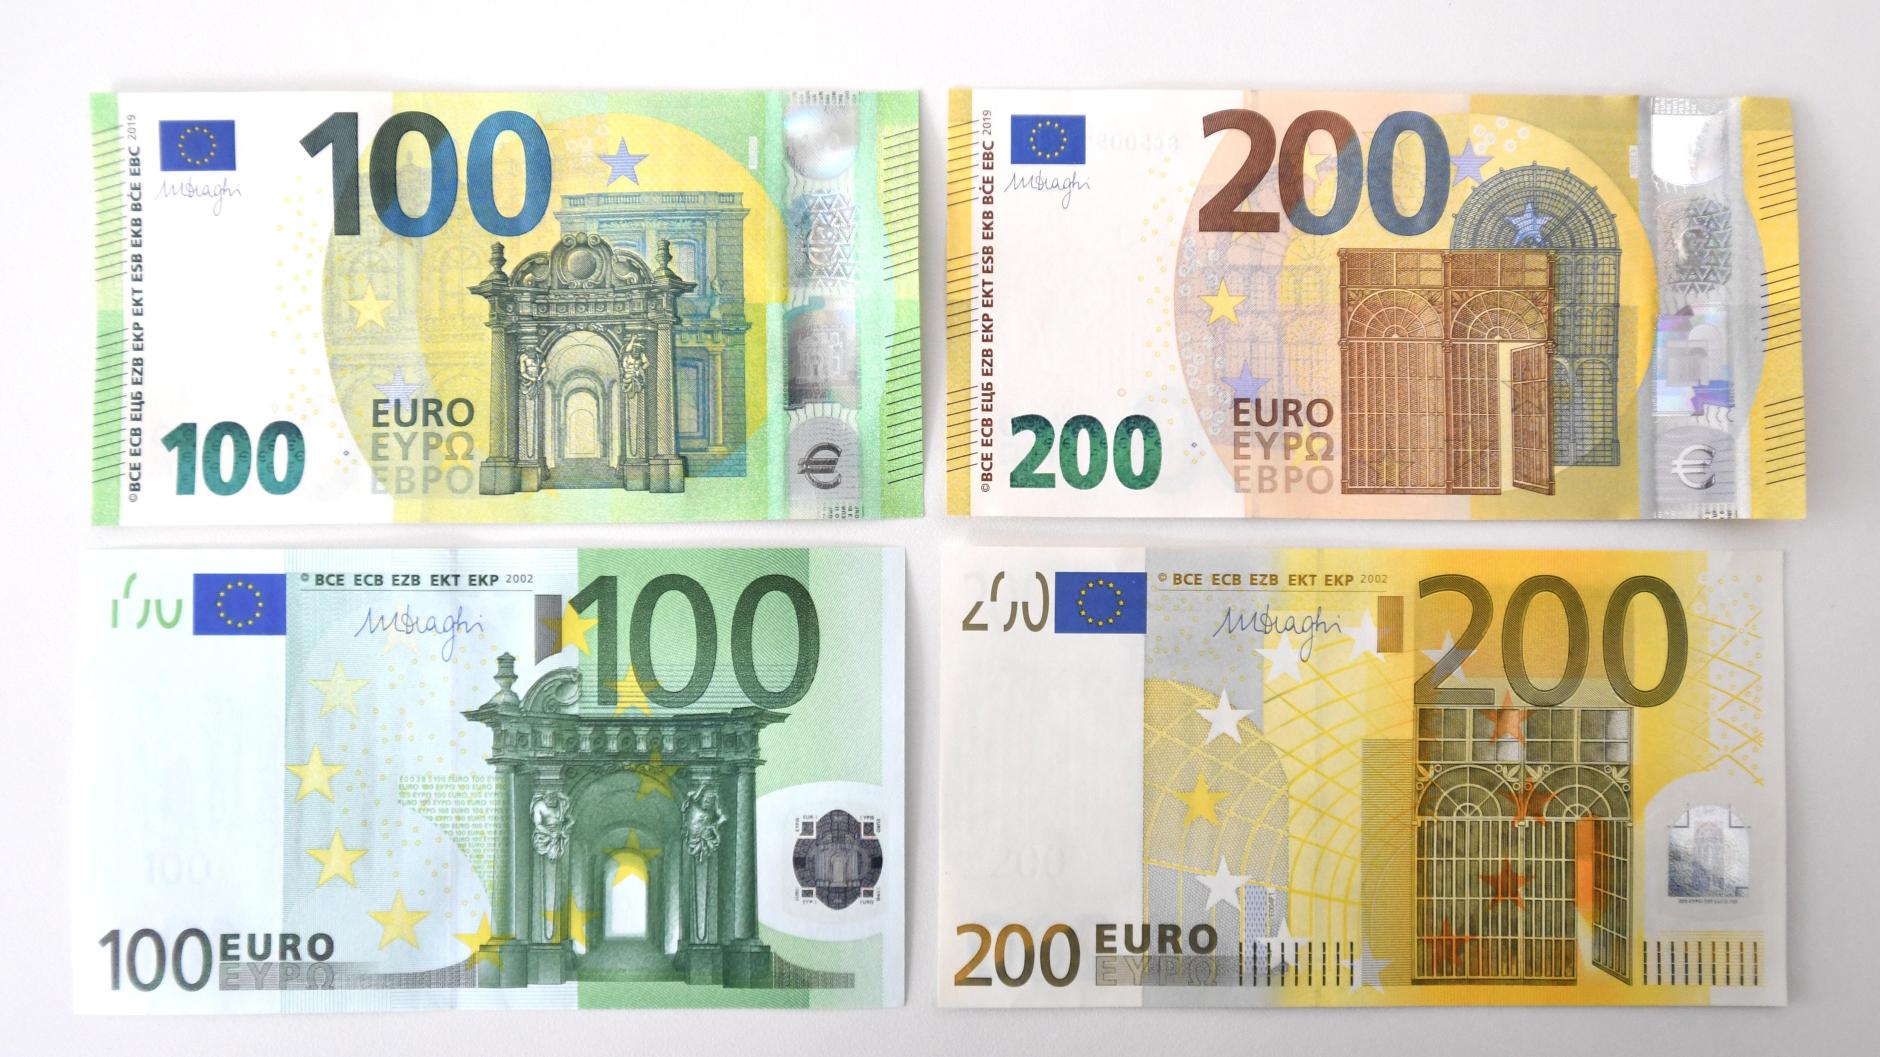 Большая купюра евро. Купюра 200 евро. 100 Евро купюра. 100 Евро купюра в Германии. Купюра 200 евро как выглядит.